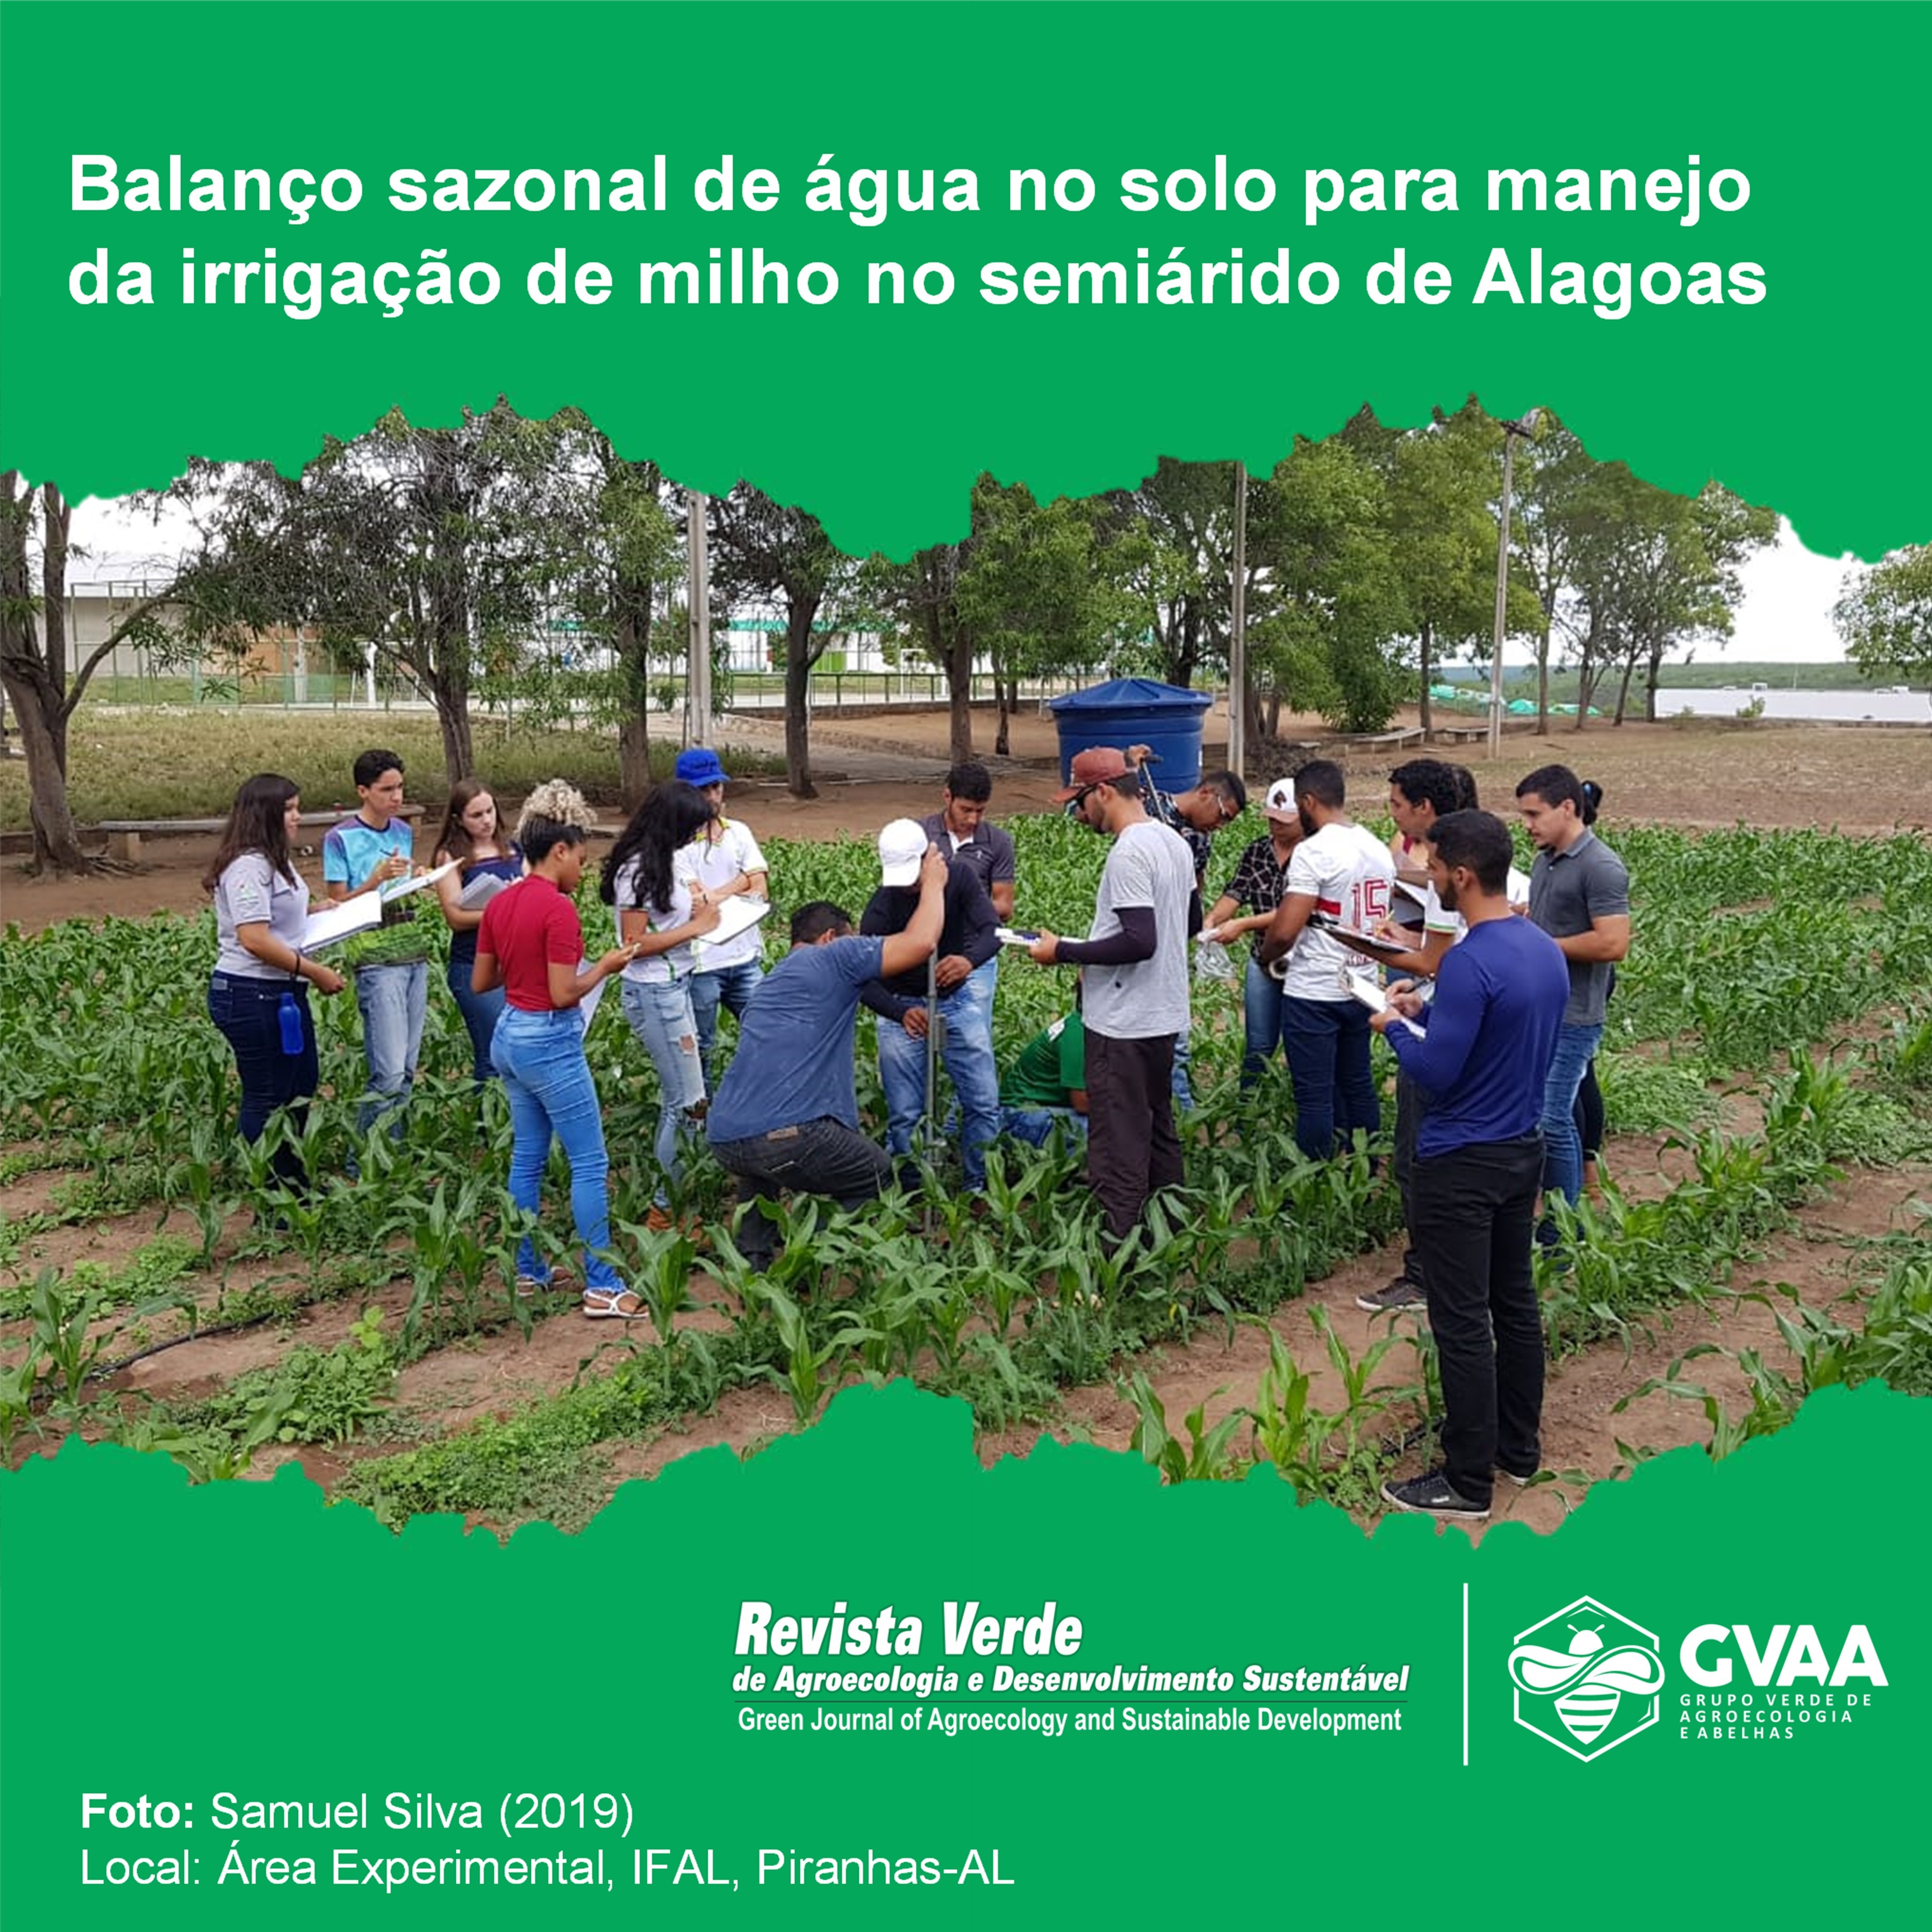 Balanço sazonal de água no solo para manejo da irrigação de milho no semiárido de Alagoas